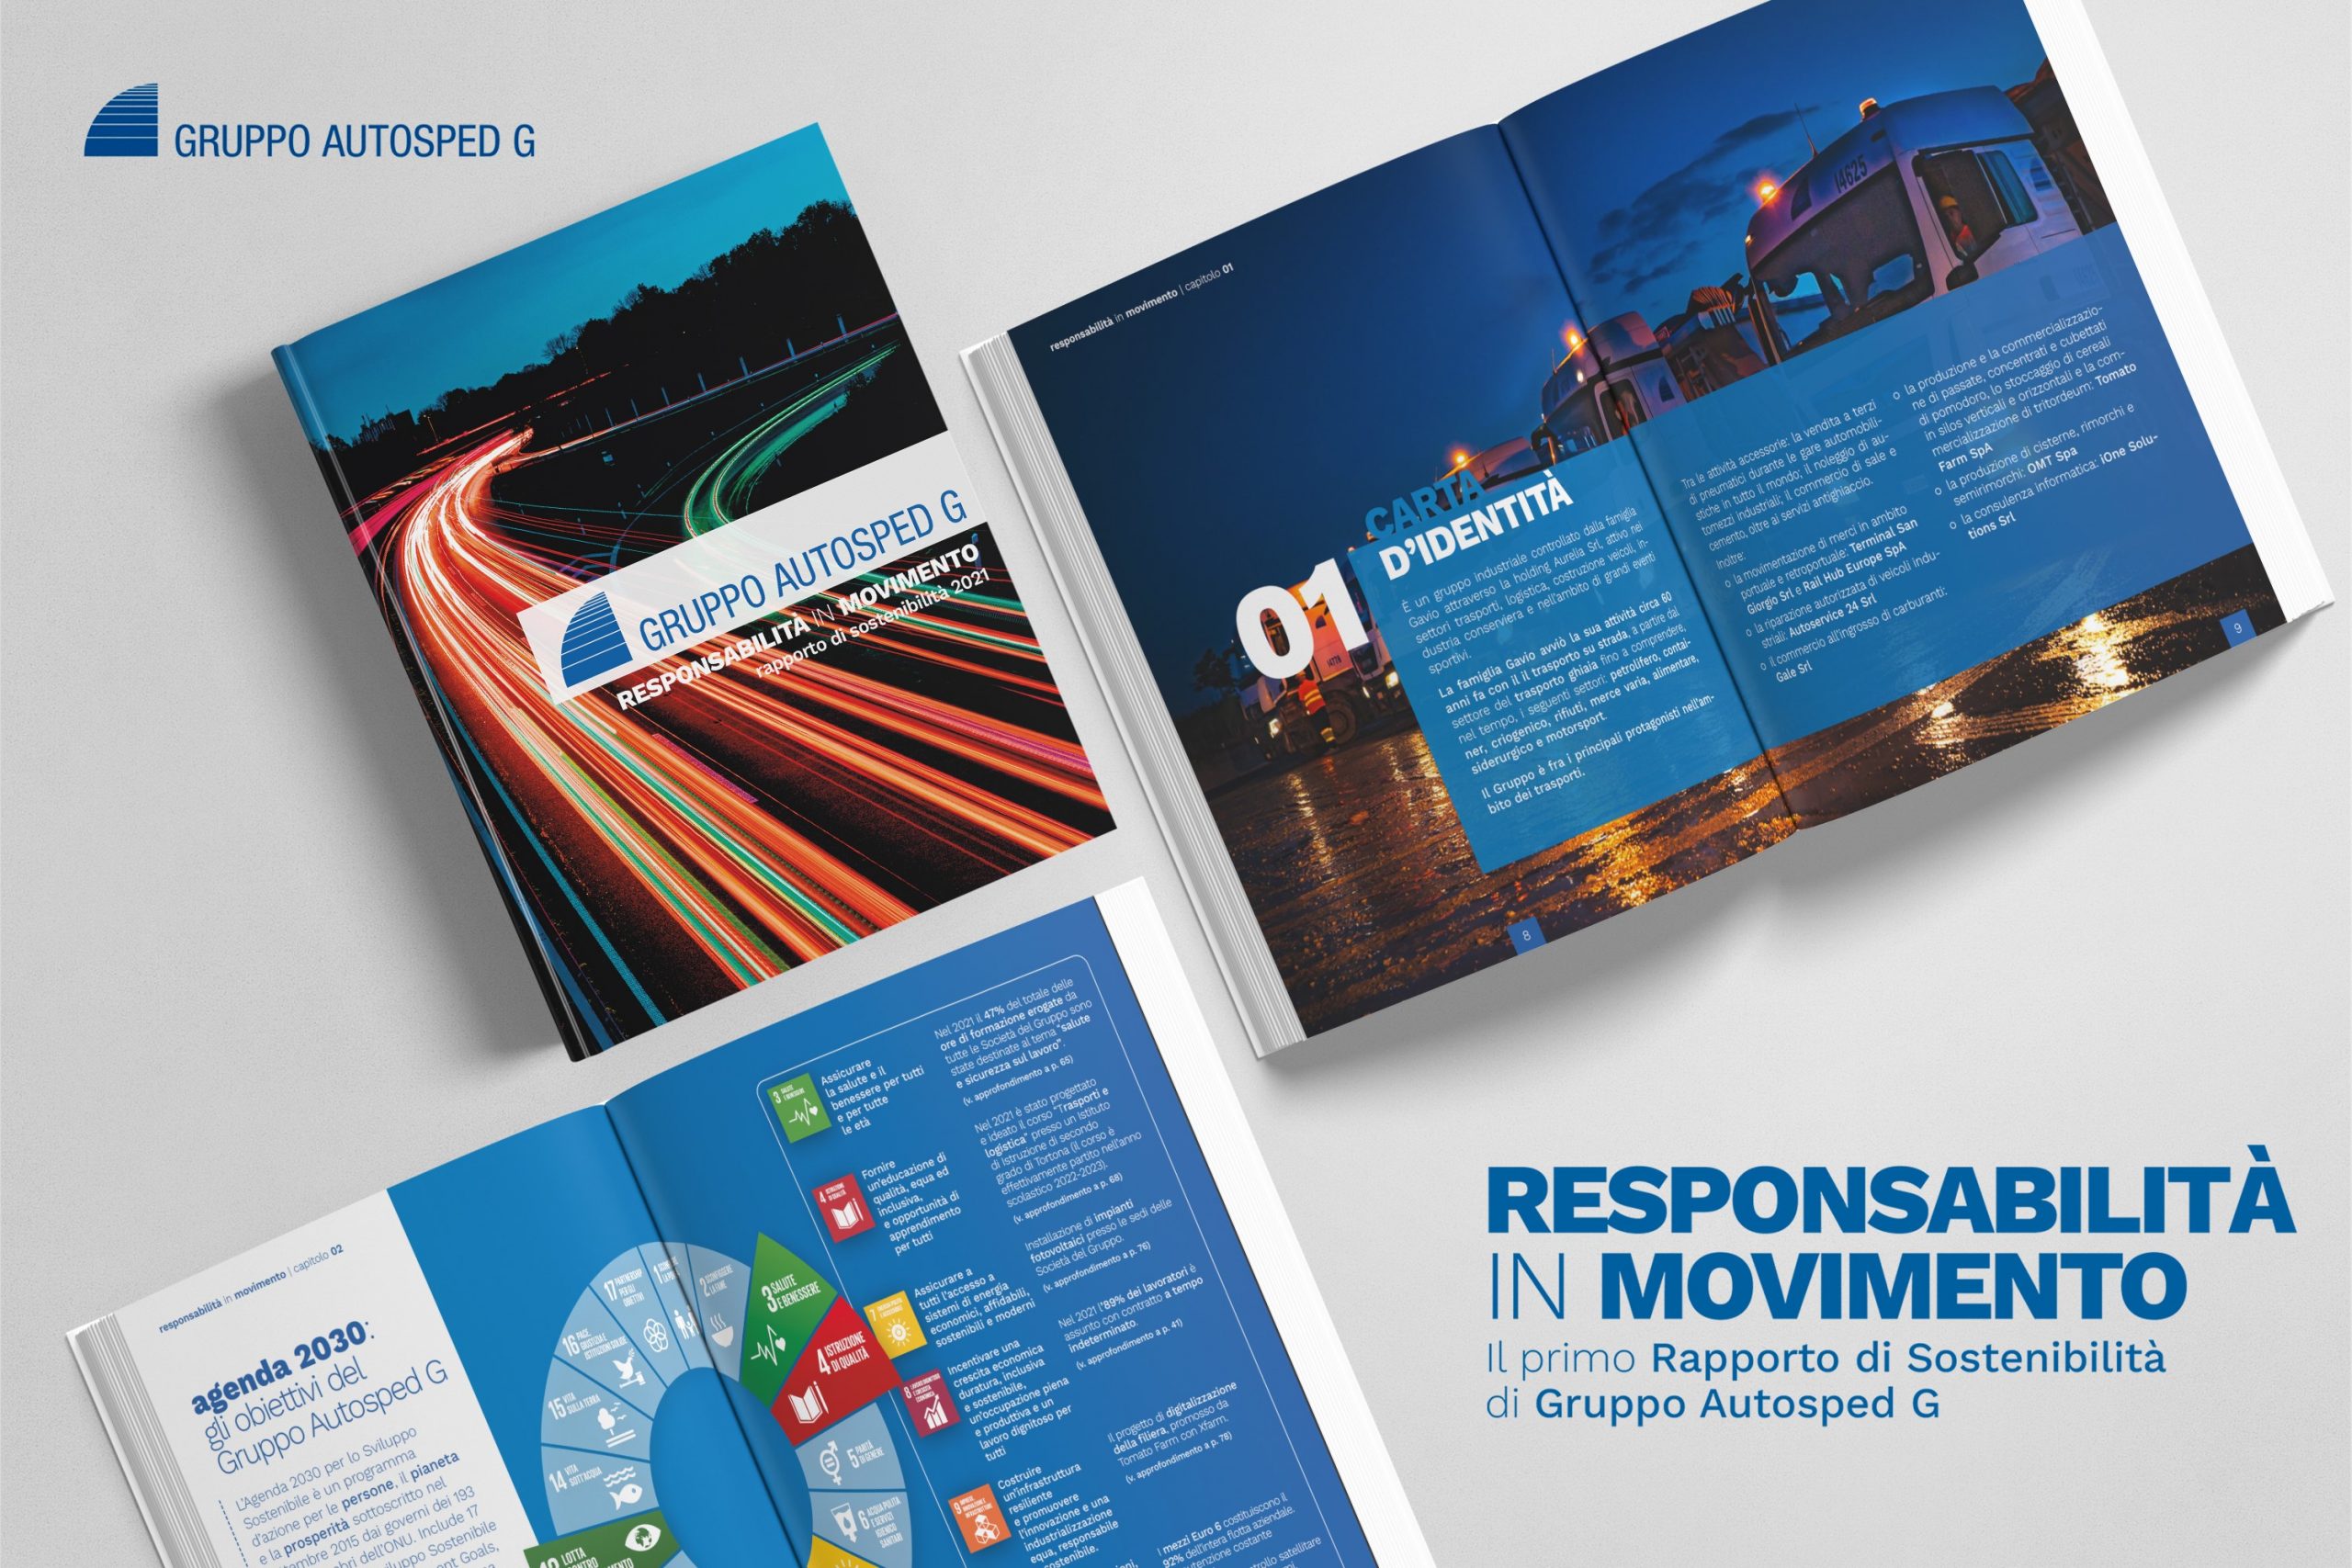 Copertina e pagine del primo rapporto di sostenibilità del Gruppo Autosped G